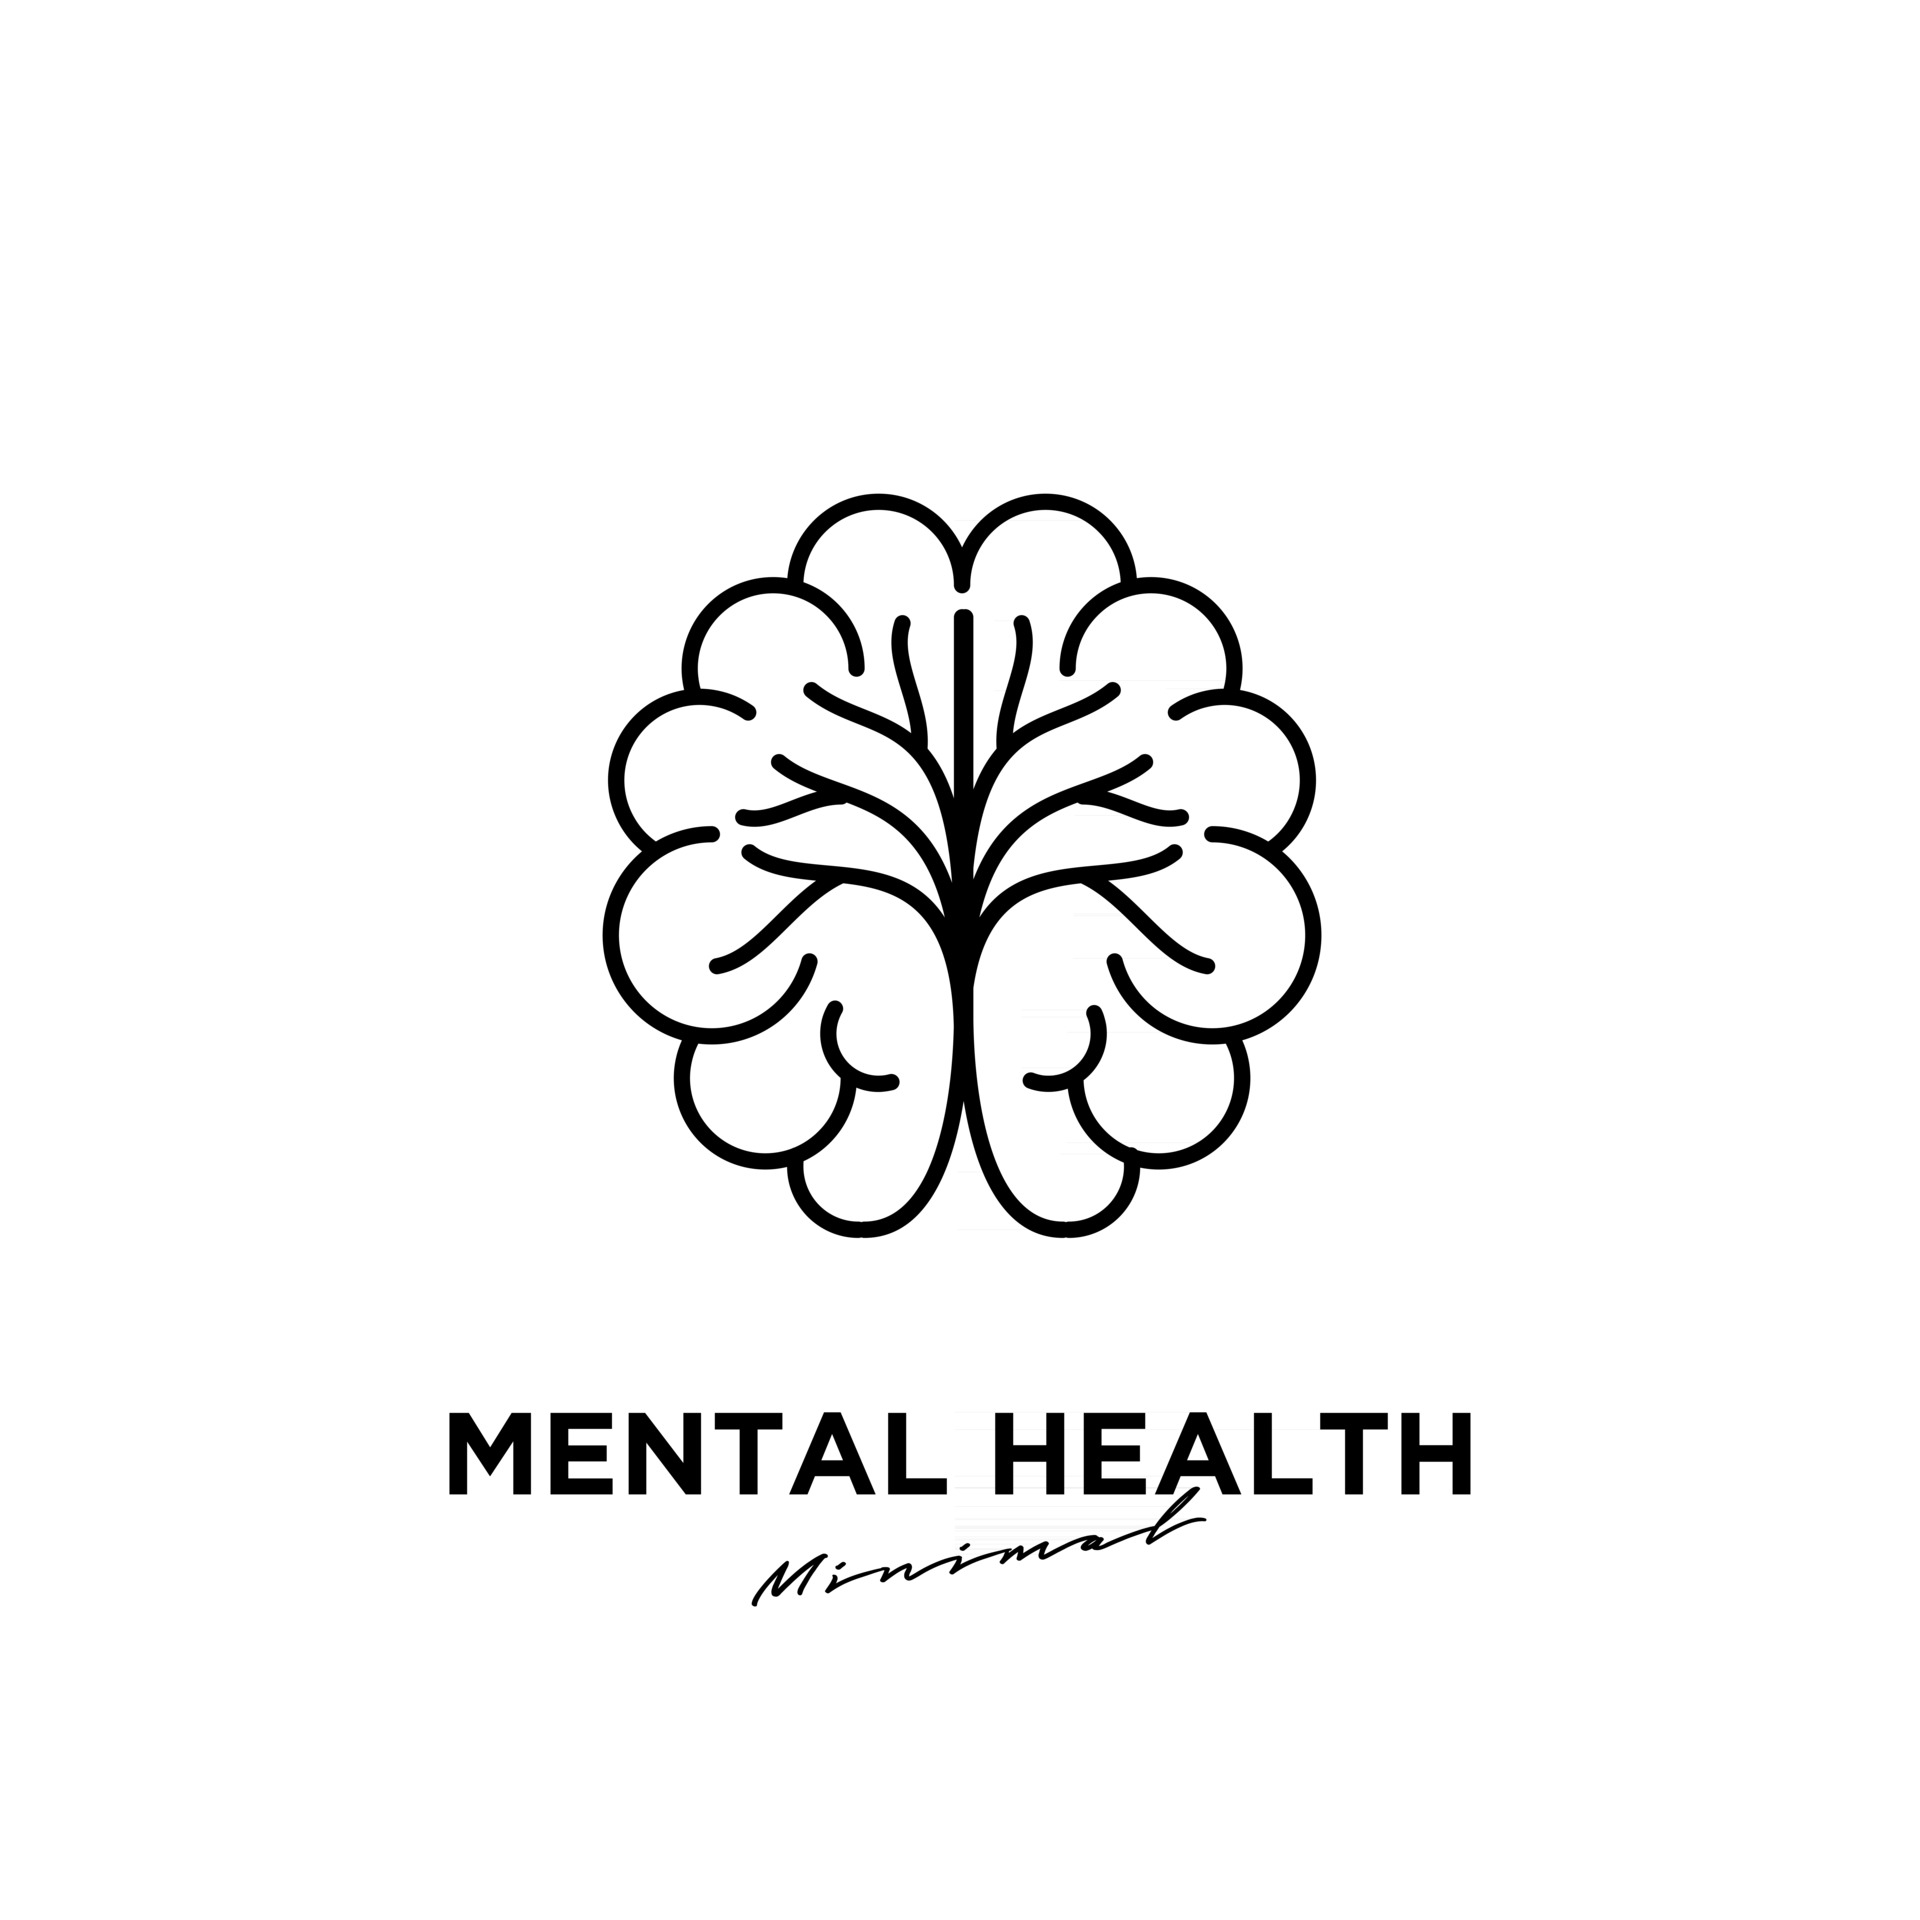 Mental Health Vector Logo Icon Design 2427775 Vector Art At Vecteezy